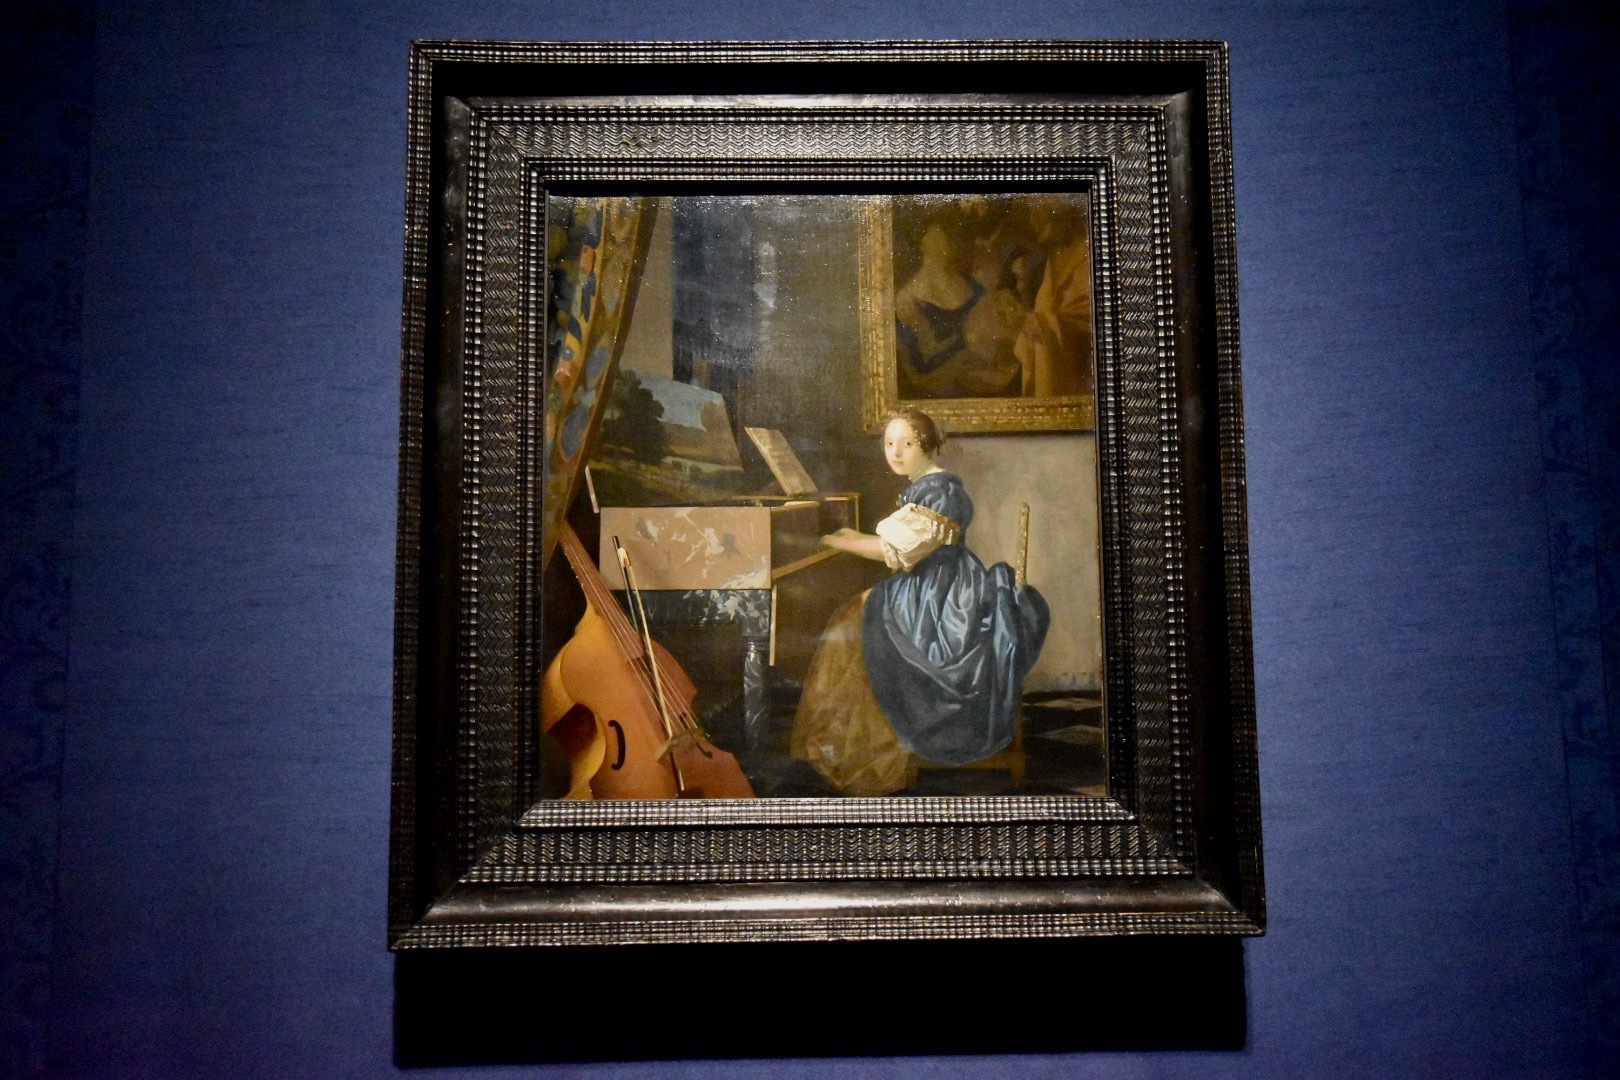 ヨハネス・フェルメール《ヴァージナルの前に座る若い女性》1670-72年頃